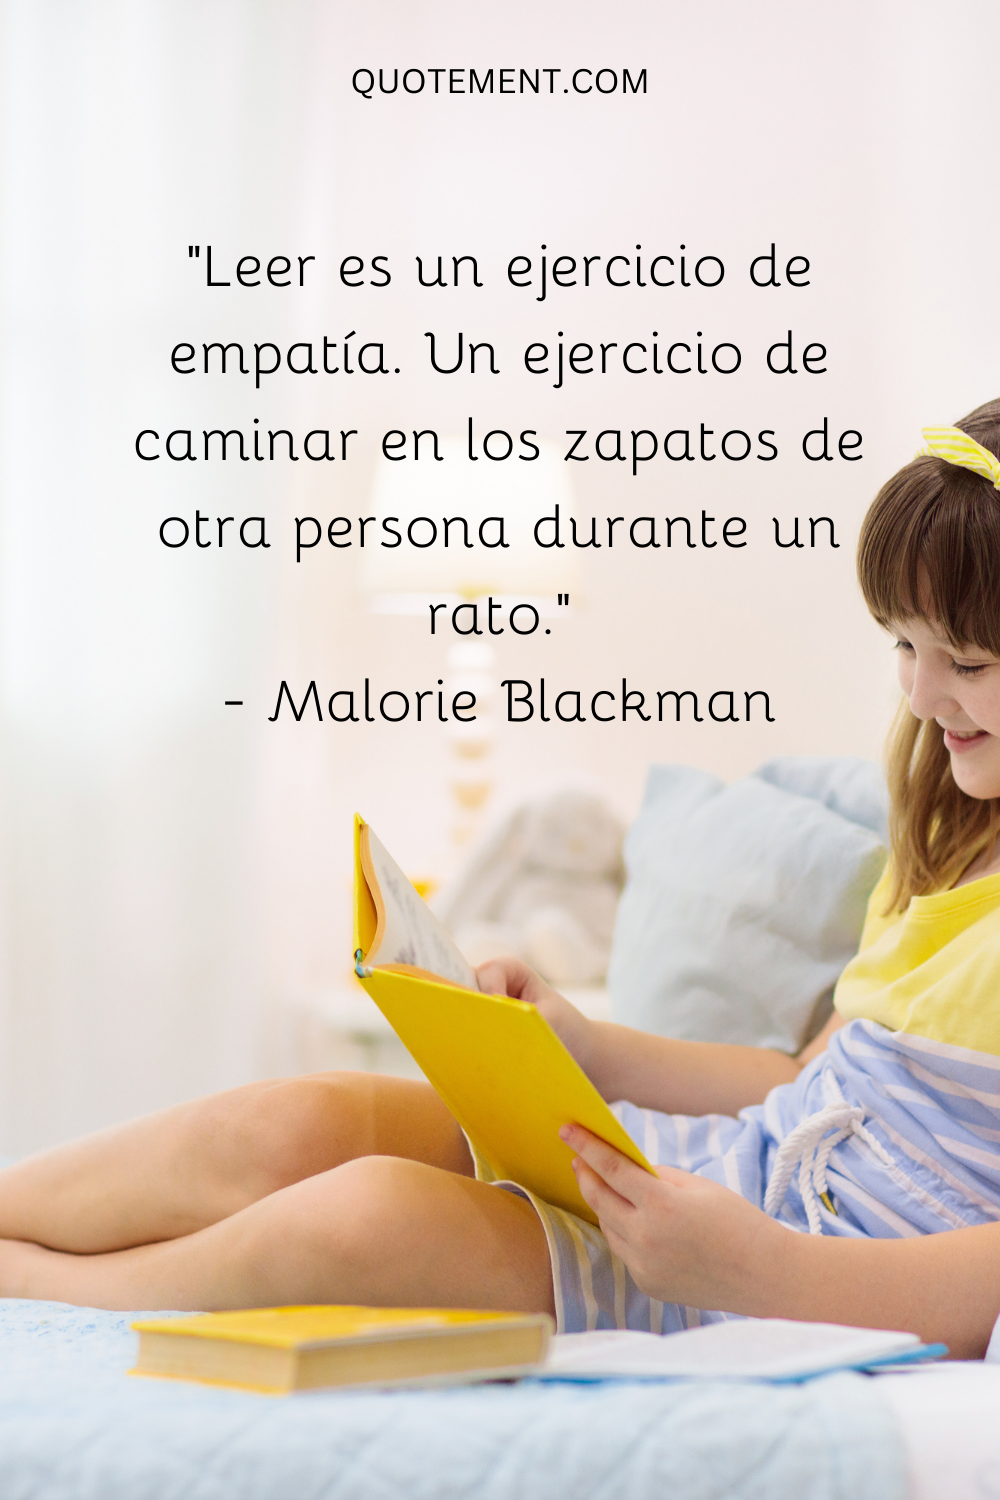 "Leer es un ejercicio de empatía. Un ejercicio de caminar en los zapatos de otra persona durante un rato". - Malorie Blackman